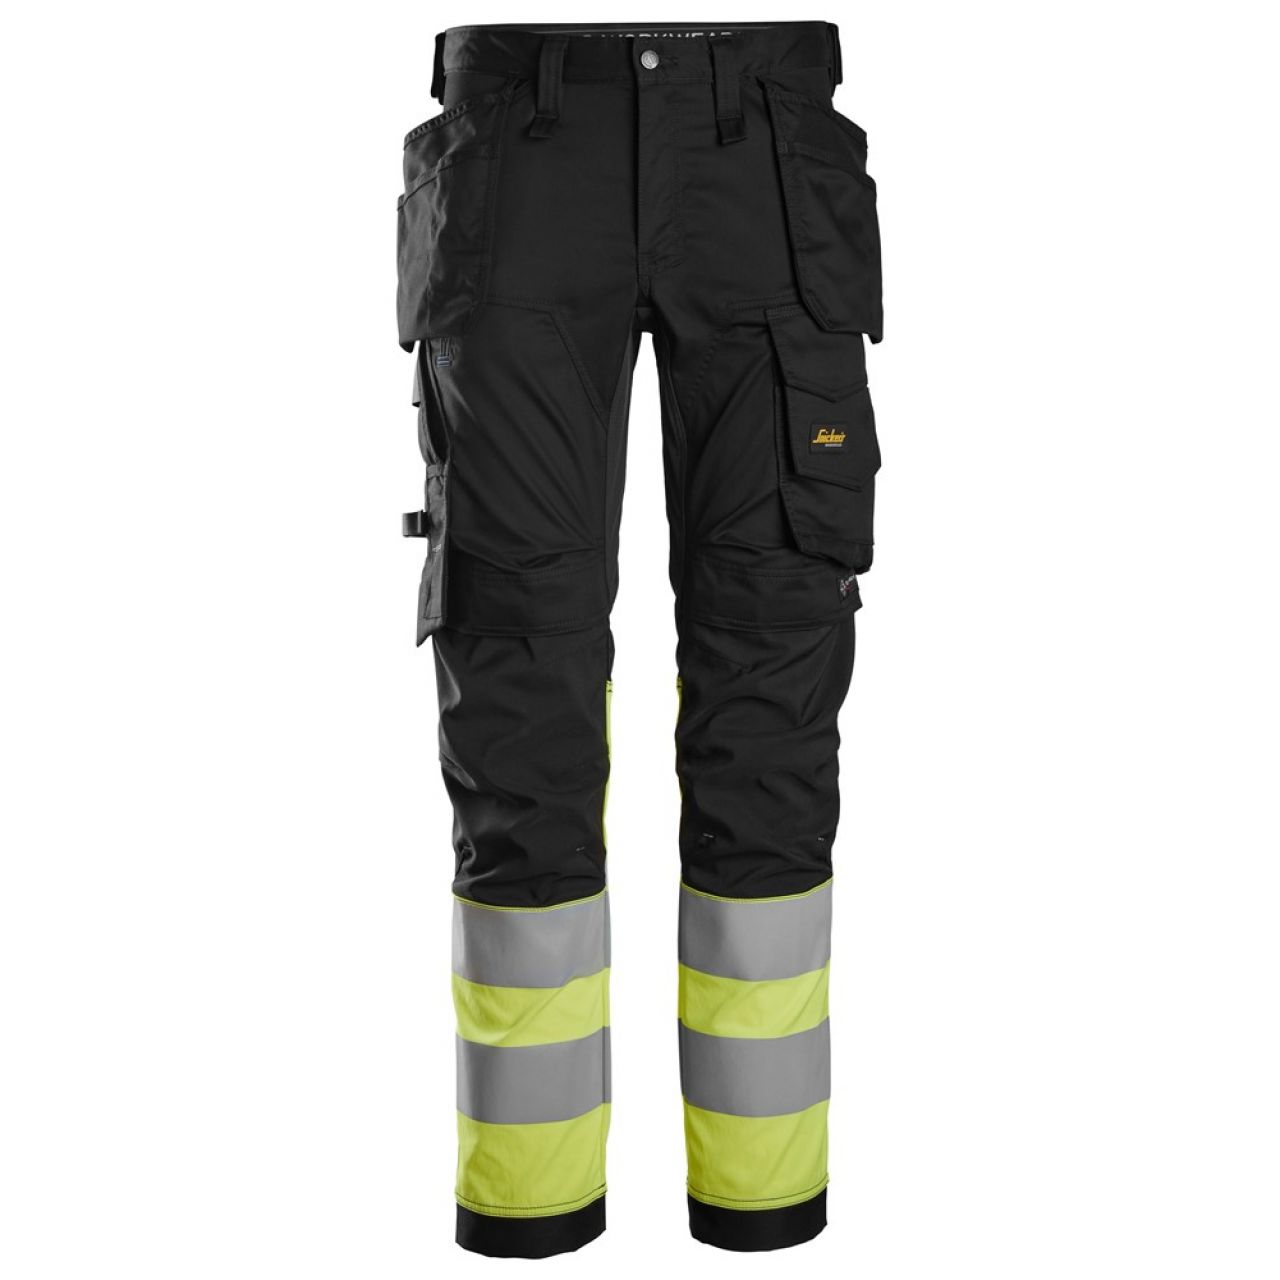 6234 Pantalones largos de trabajo elásticos de alta visibilidad clase 1 con bolsillos flotantes negro-amarillo talla 250